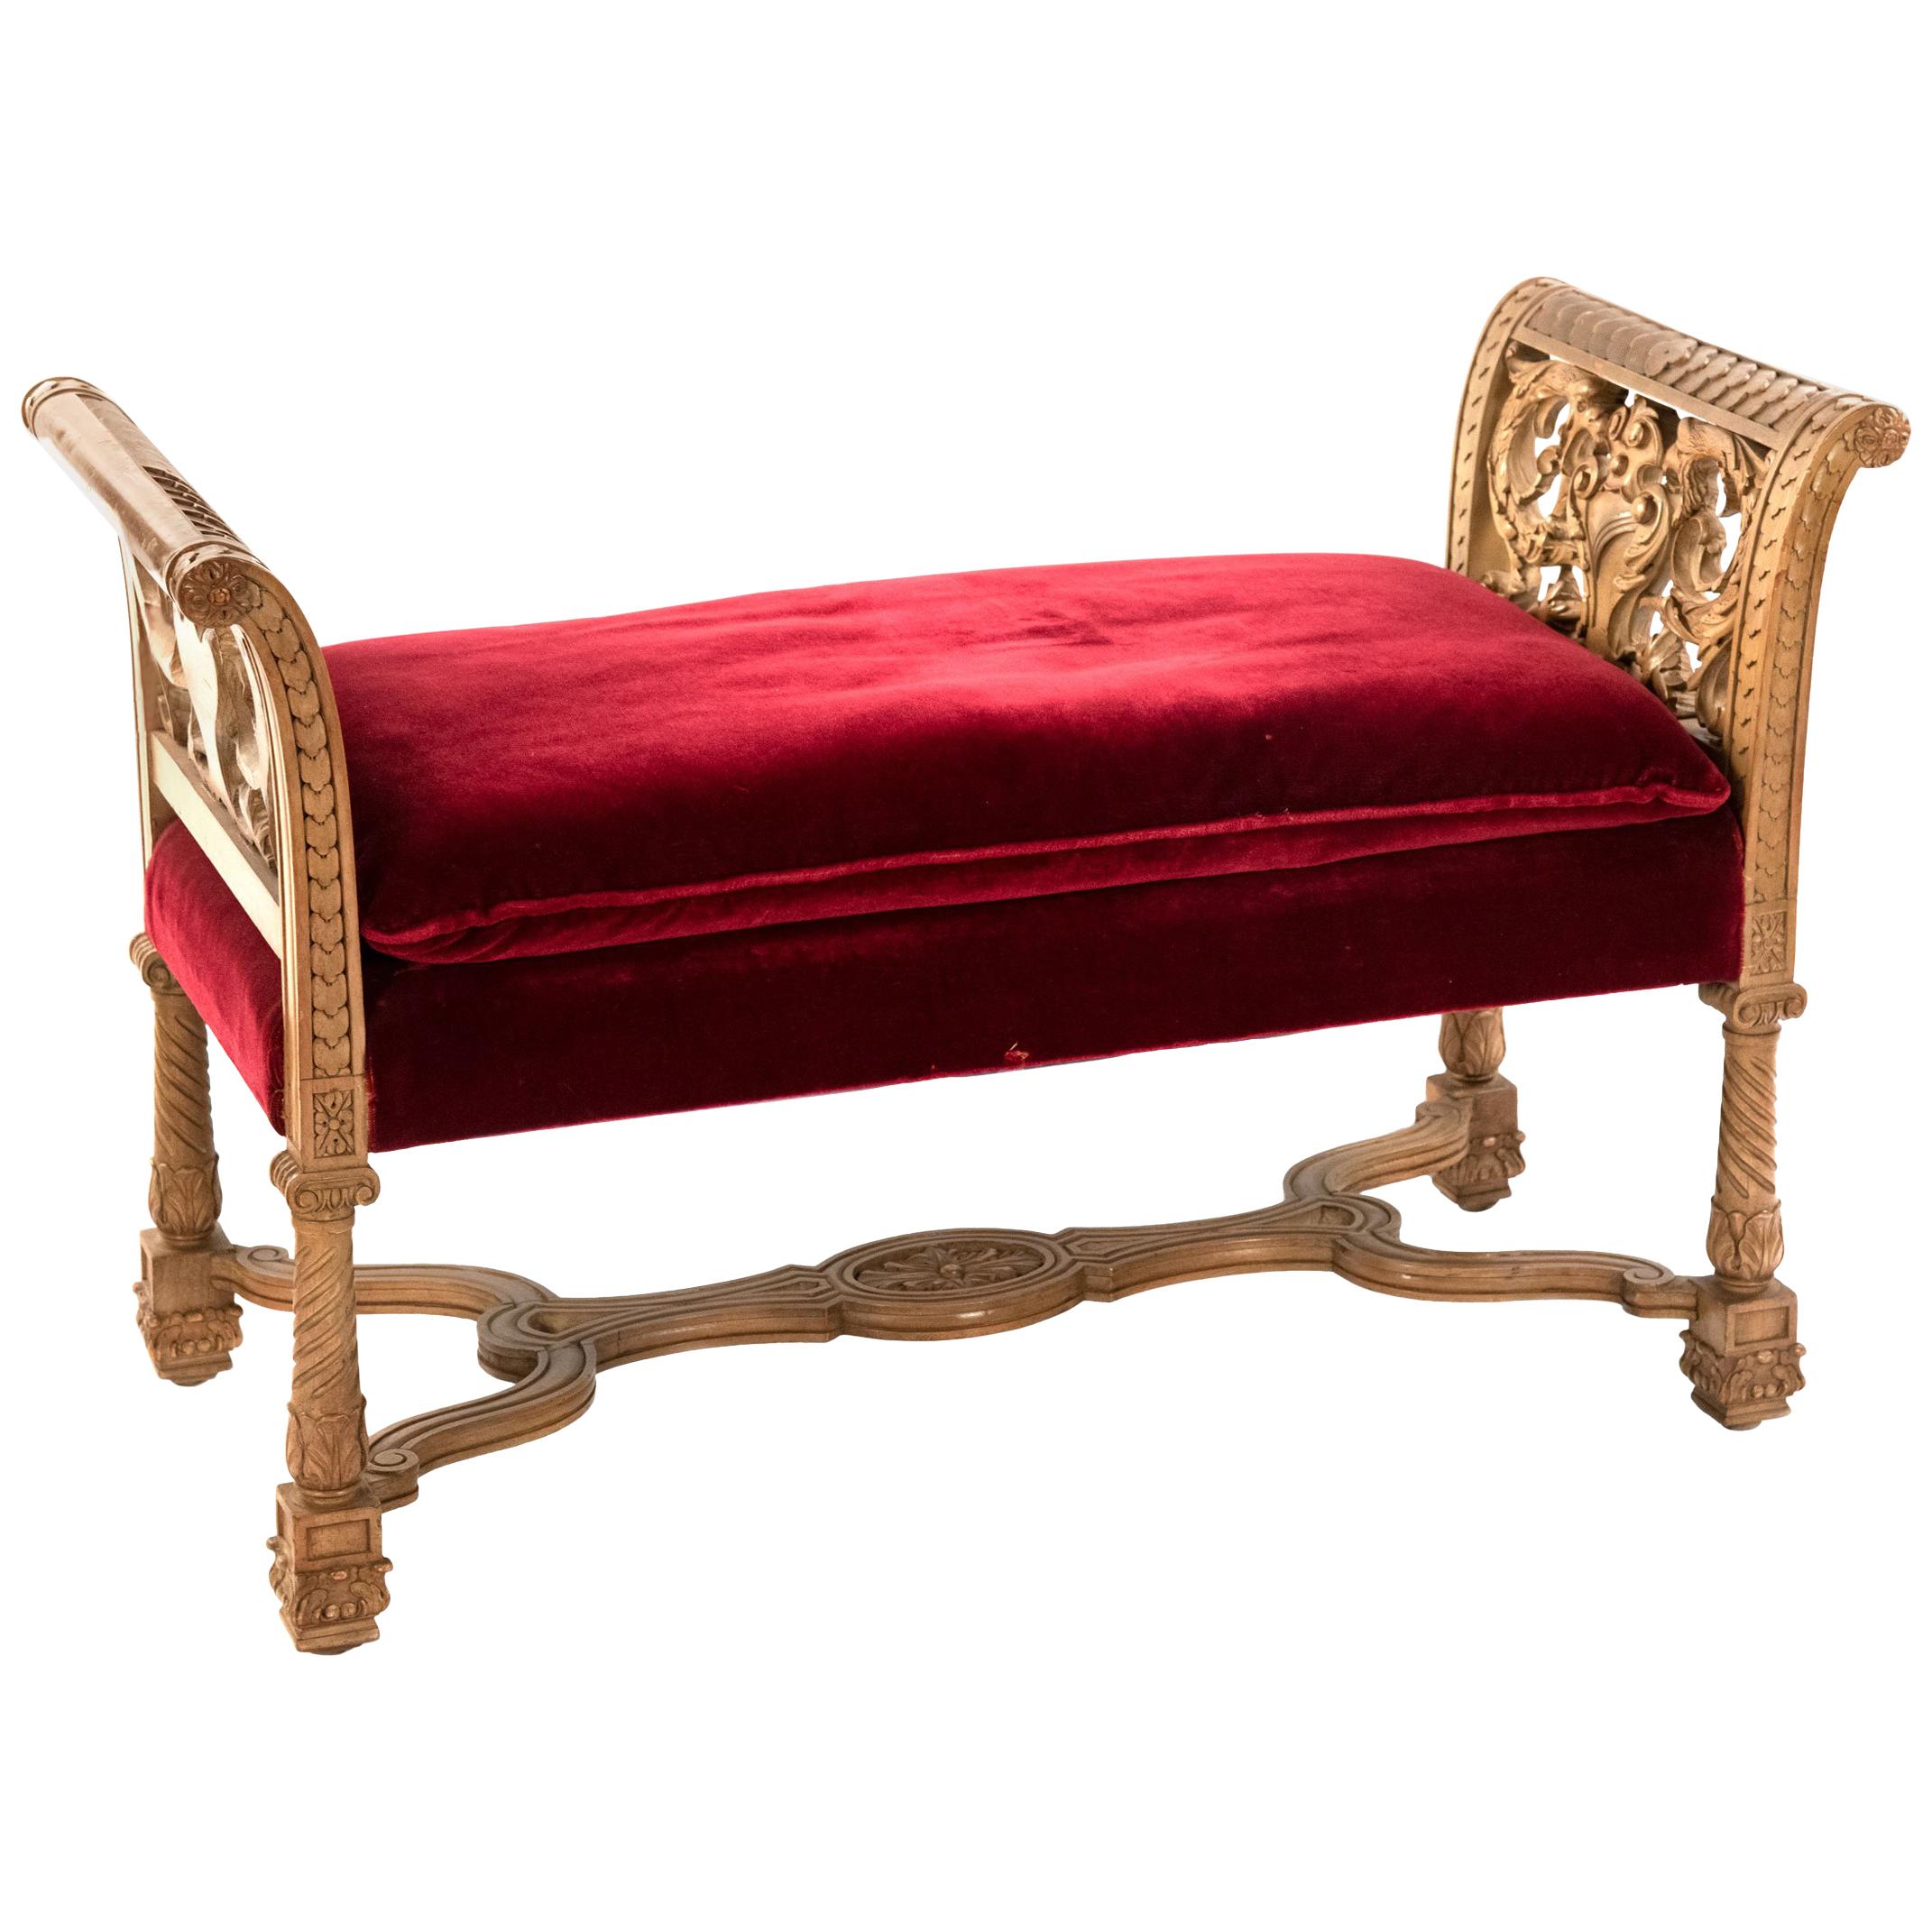 Carved Italian White Oak Renaissance Revival Bench with Red Velvet Cushion For Sale